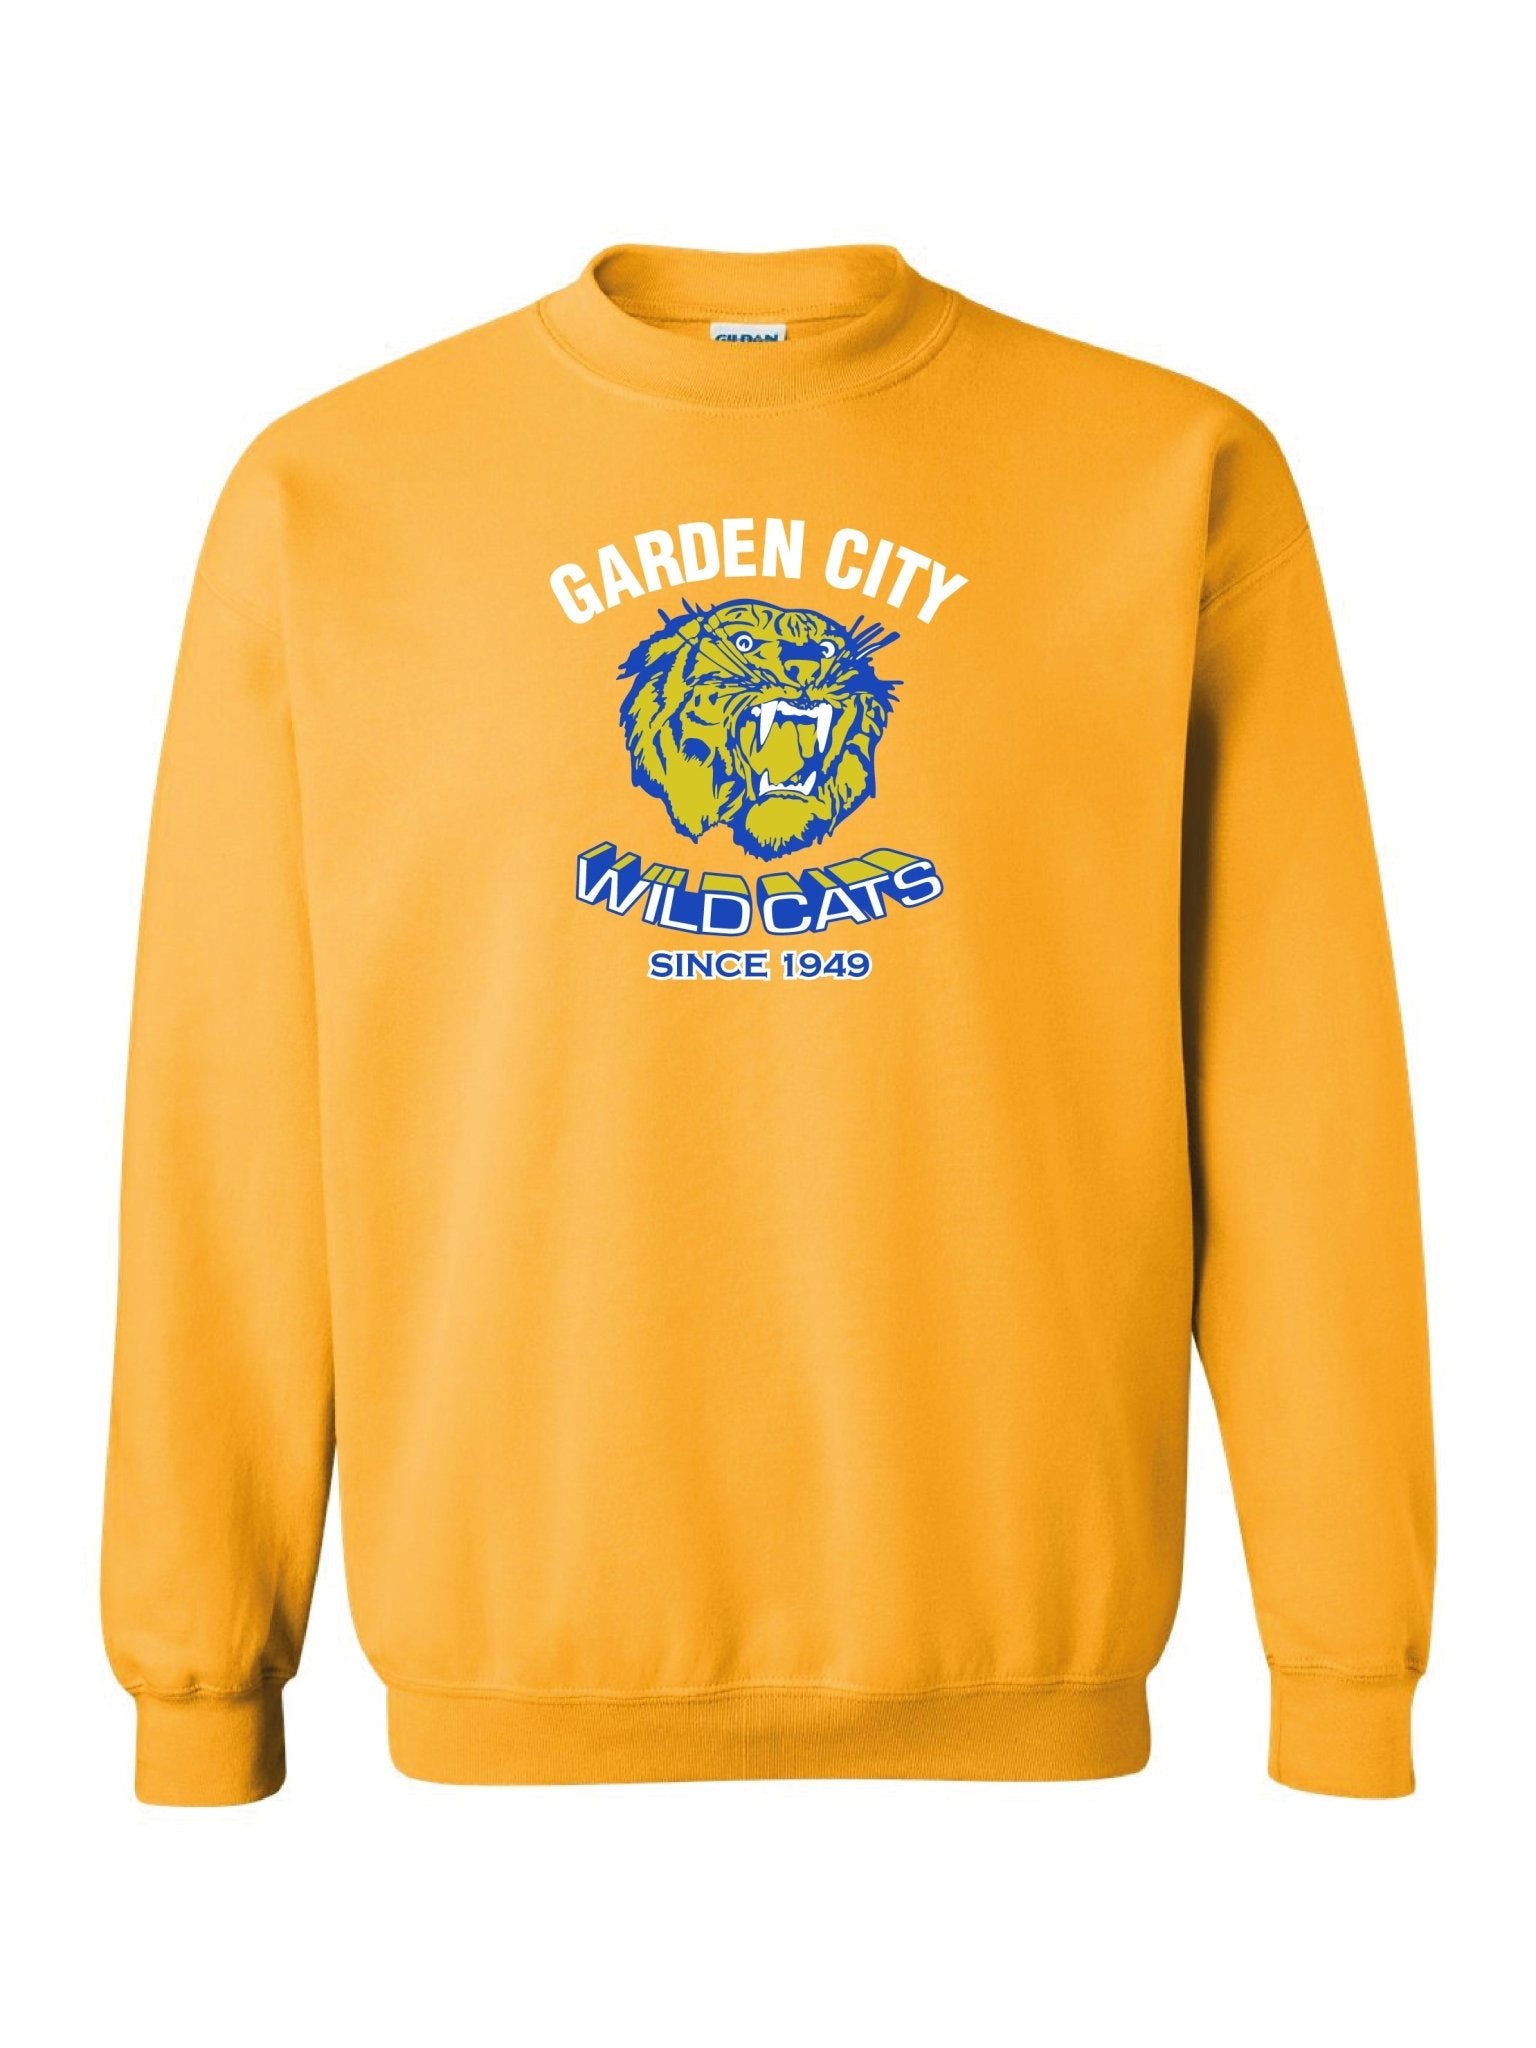 Adult Garden City Wildcats Since 1949 Crewneck Sweatshirt